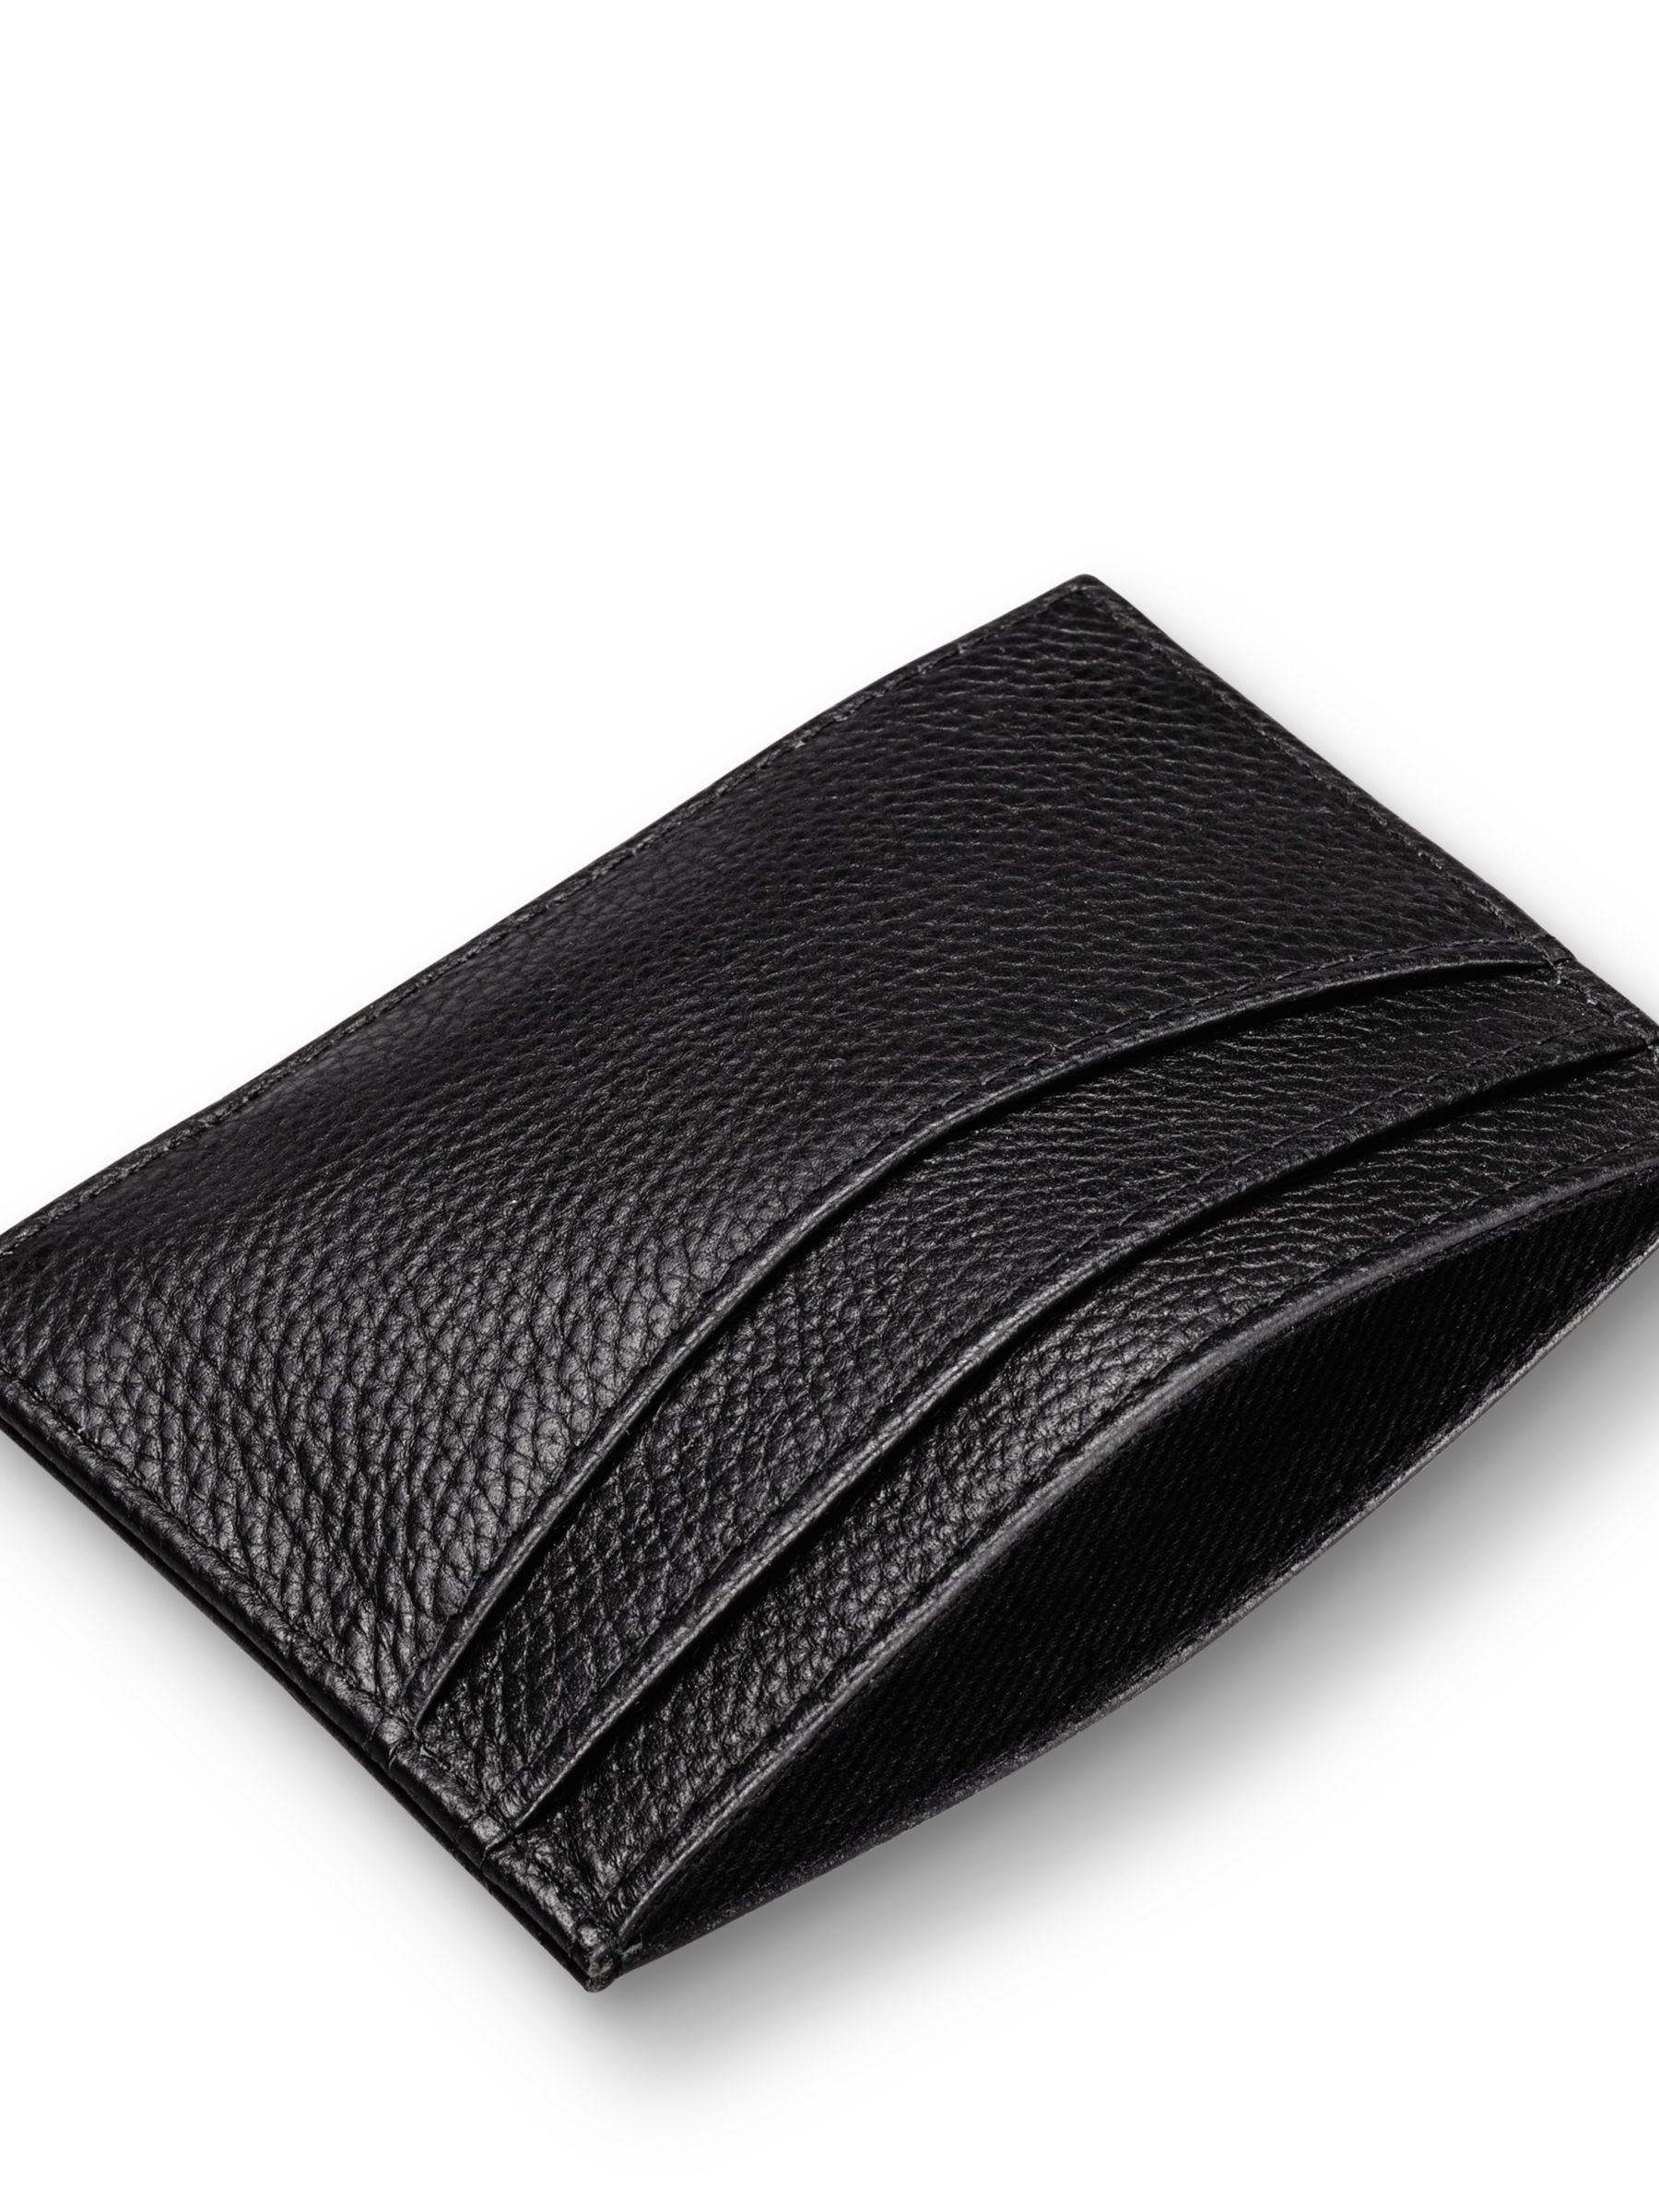 Charles Tyrwhitt Leather Cardholder, Black